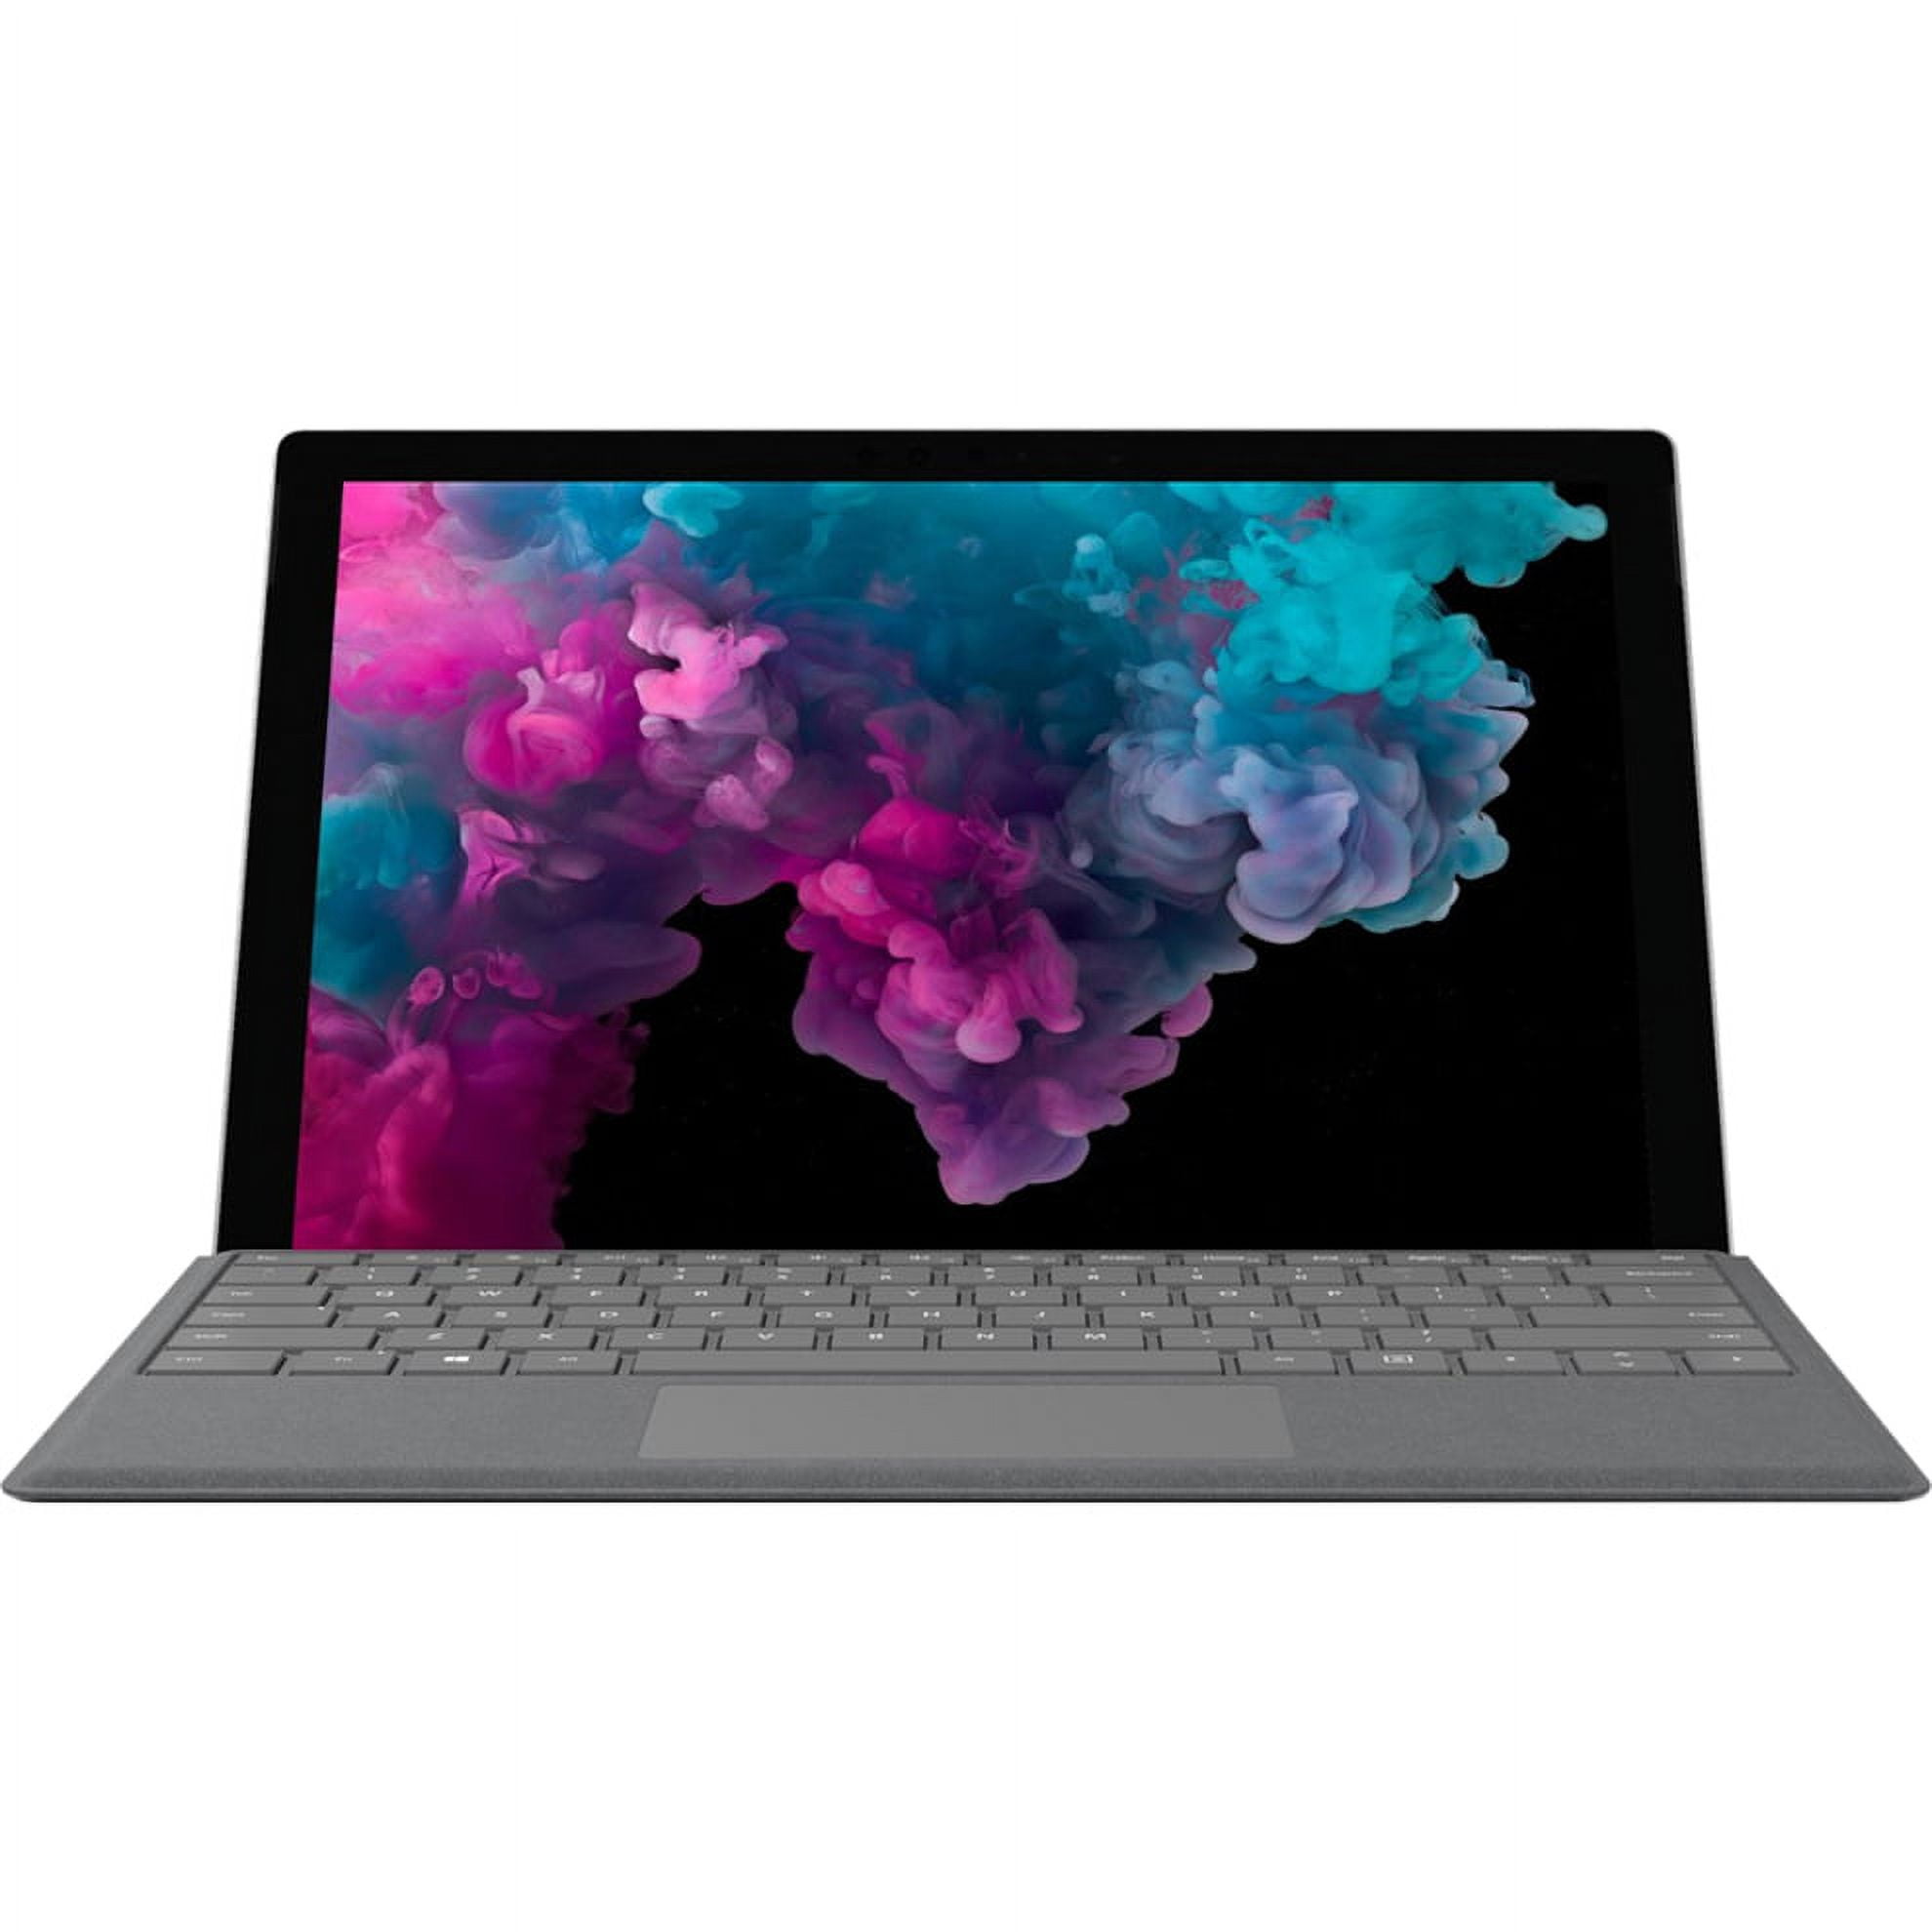 Microsoft Surface Pro 6 - Tablet - Core i5 8250U / 1.6 GHz